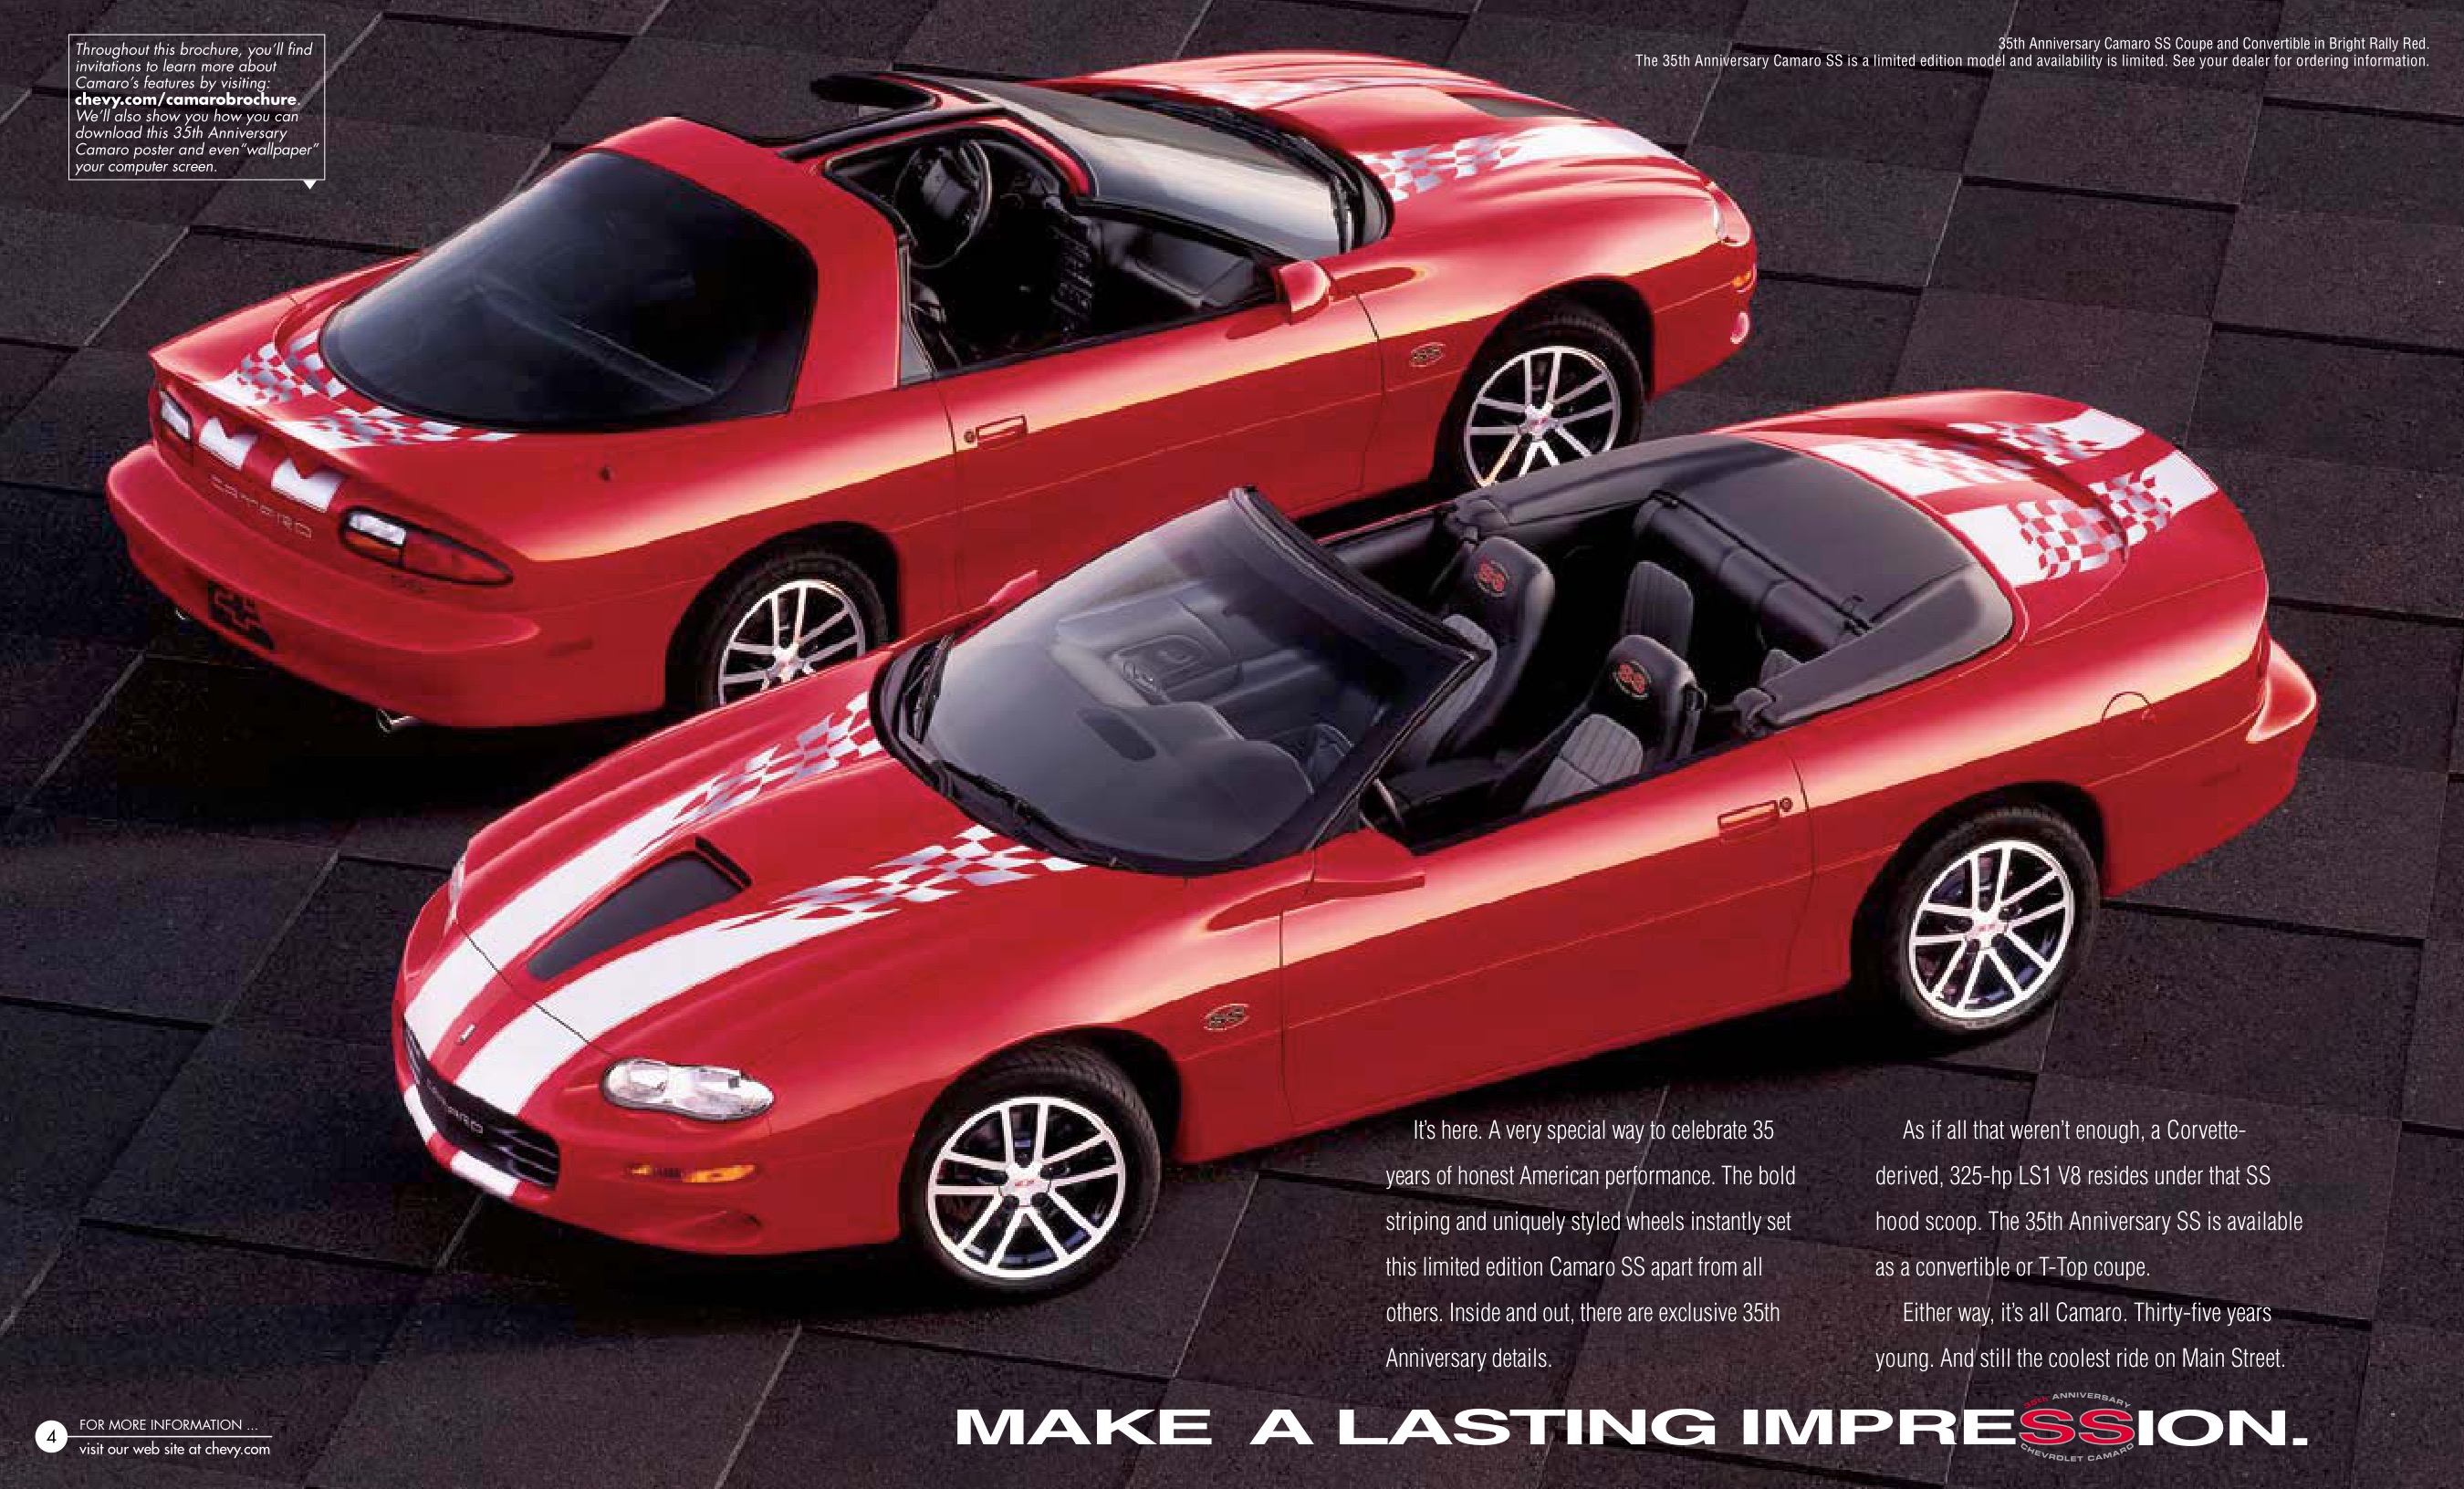 2002 Chev Camaro Brochure Page 1